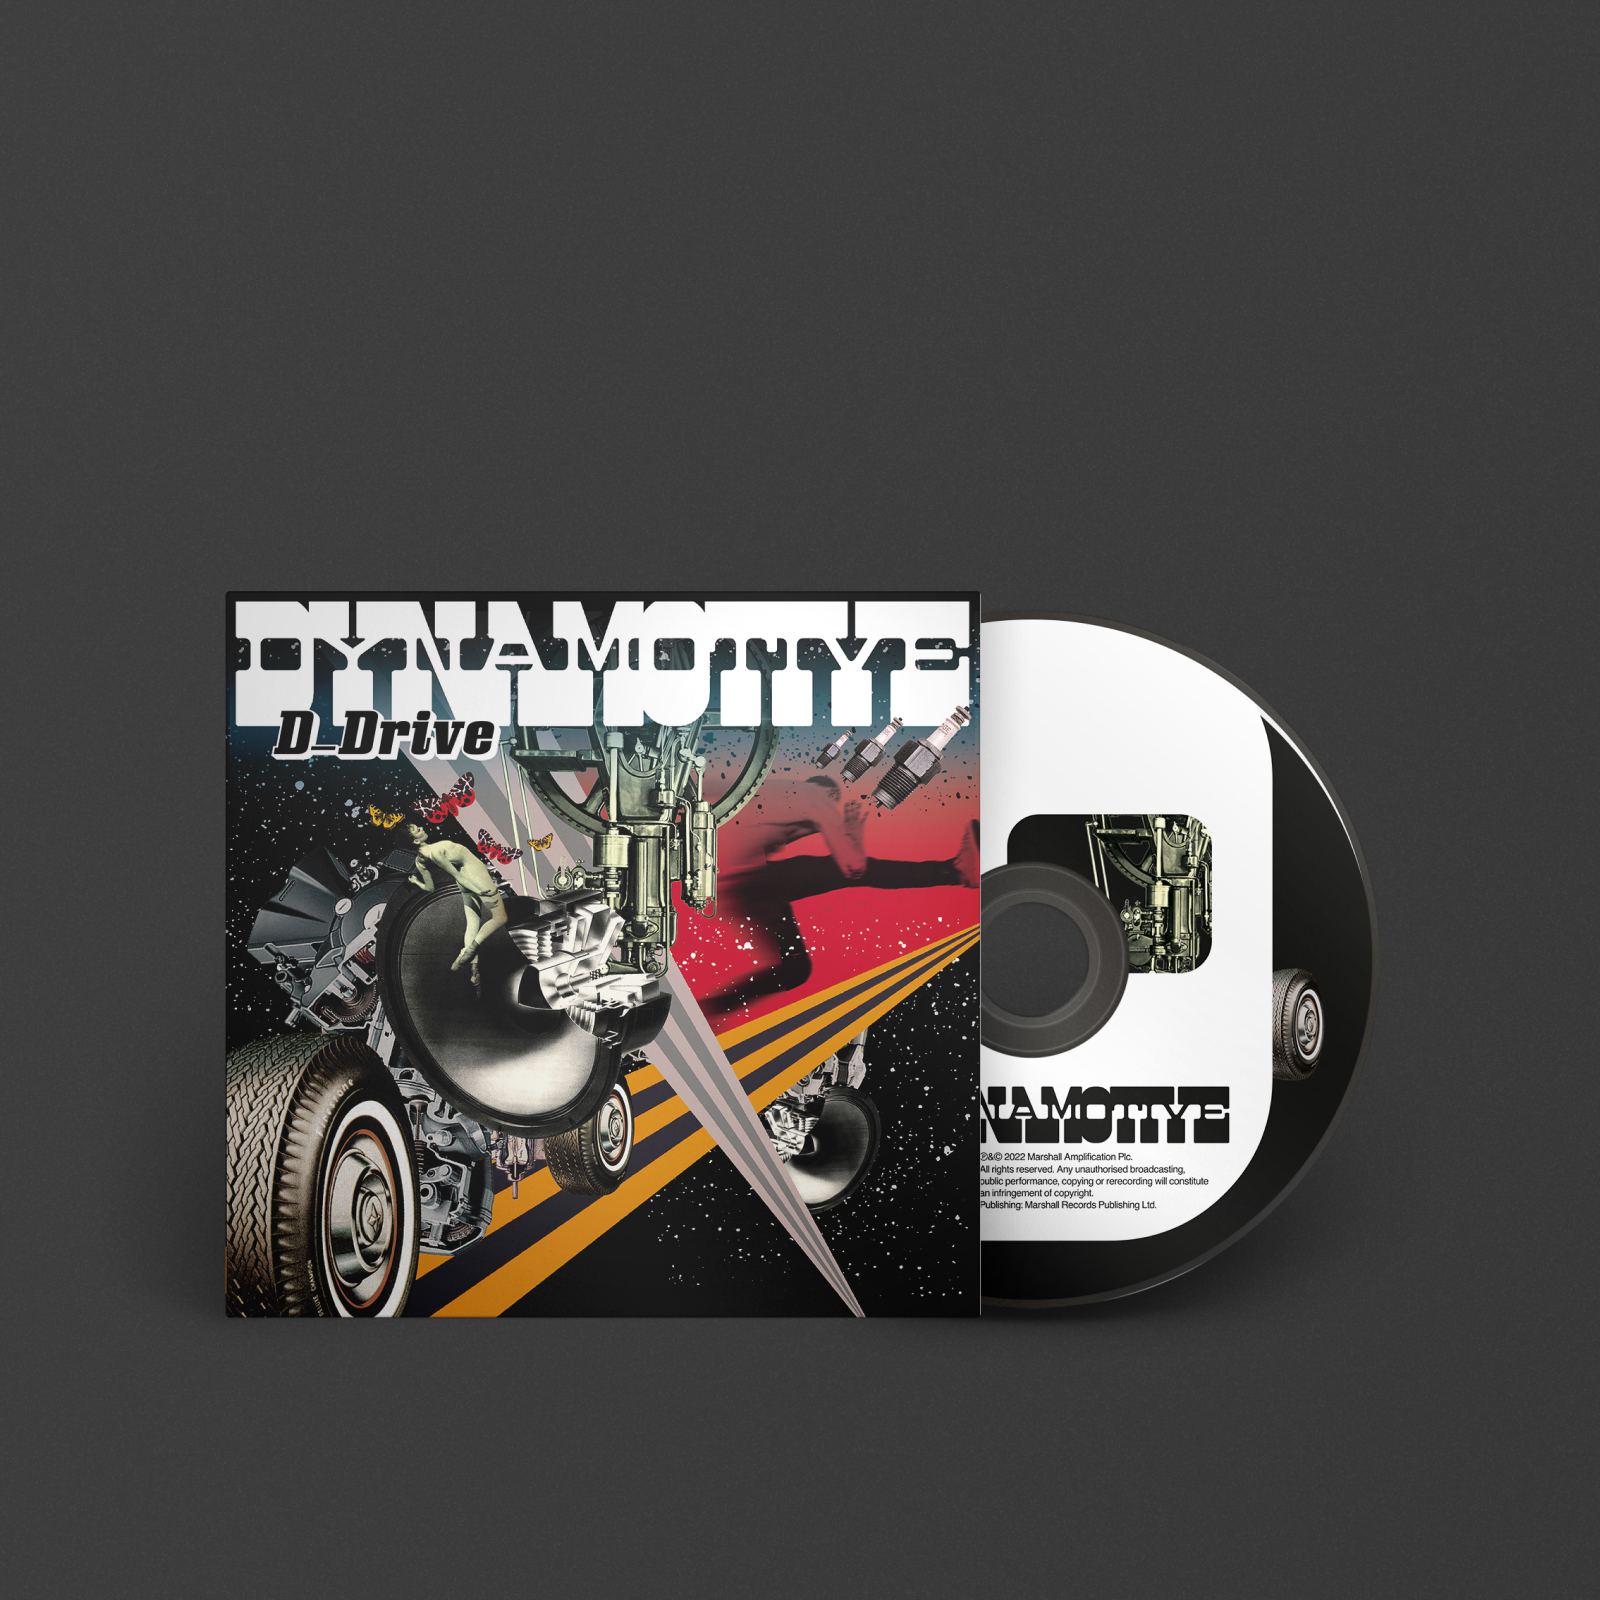 MarshallからリリースのD_DRIVEによる『DYNAMOTIVE』。車とバイクをイメージするようなジャケットカバー。